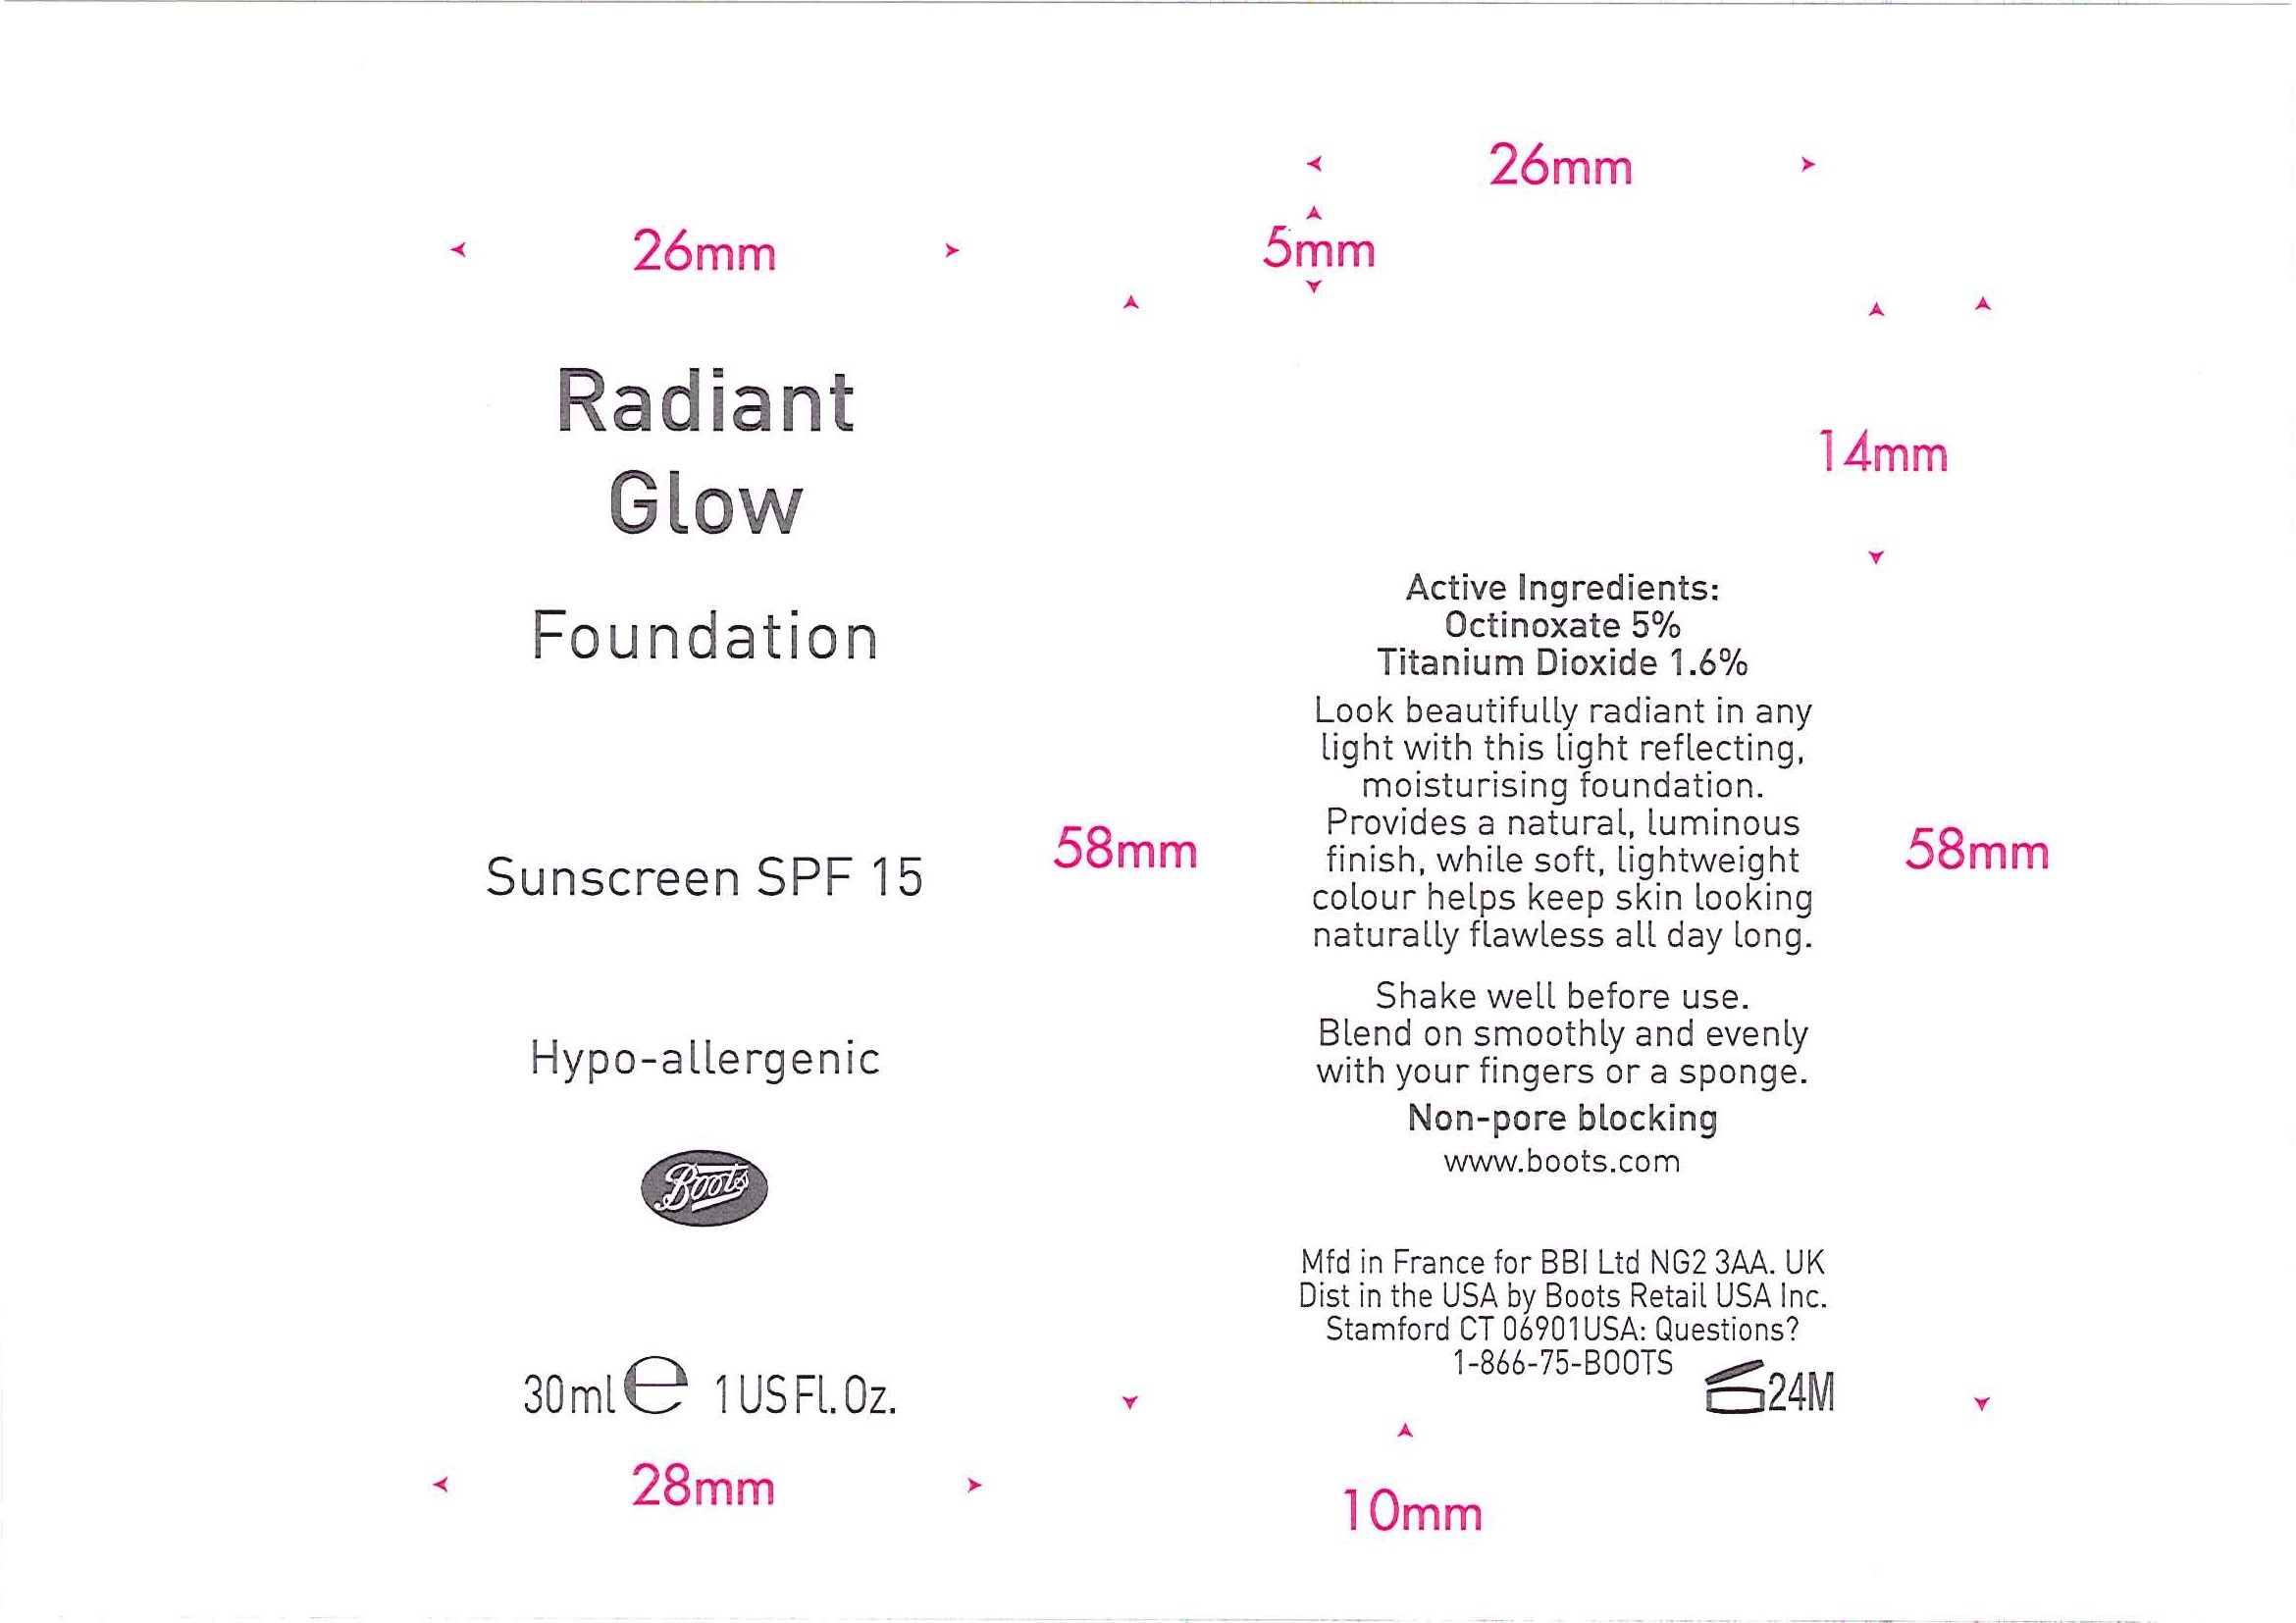 Radiant Glow Fdn bottle labels